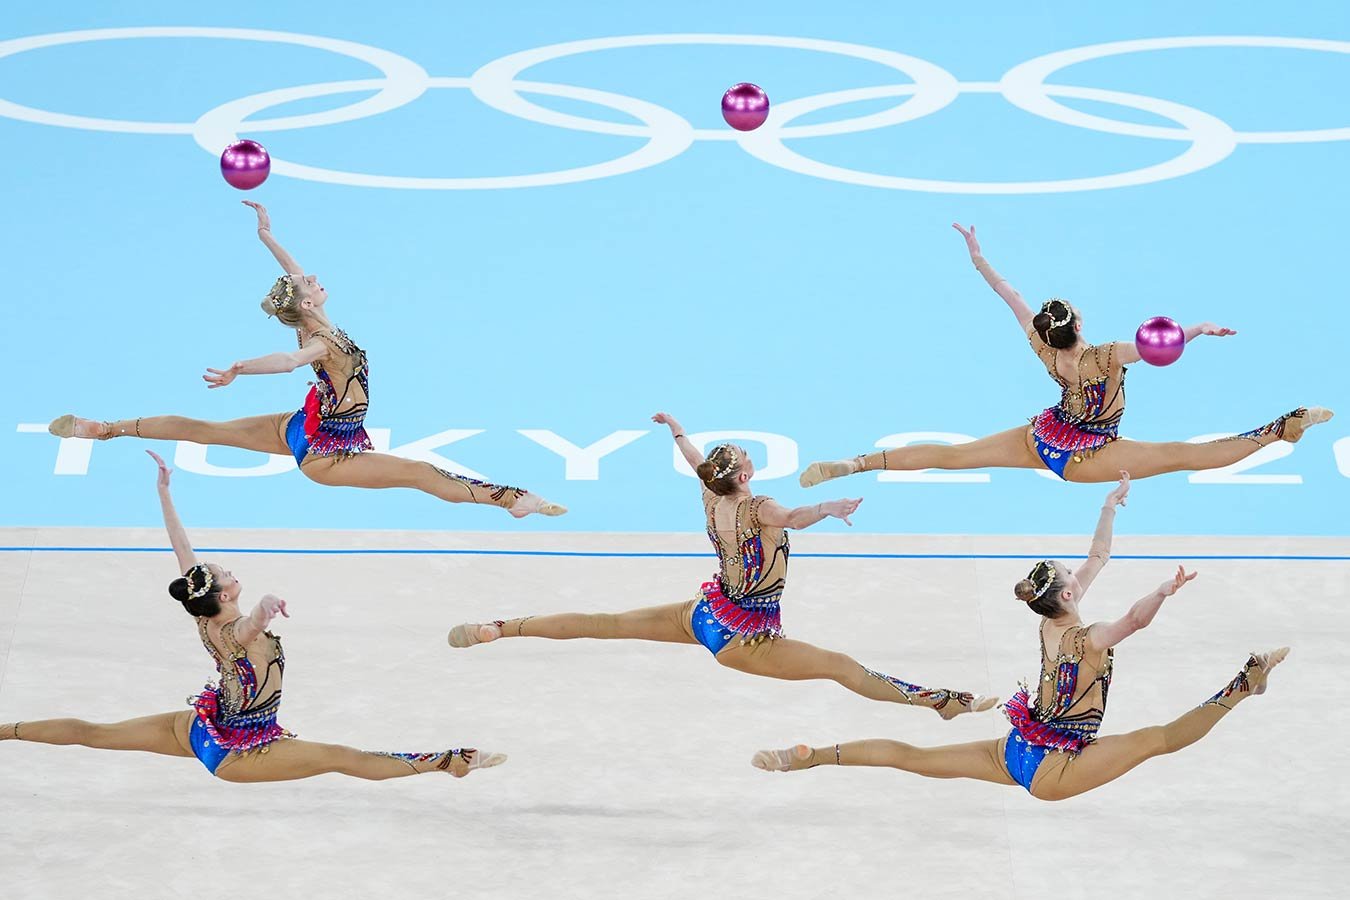 Протест России на оценку в групповом многоборье в художественной гимнастике  на ОИ в Токио отклонён - Чемпионат